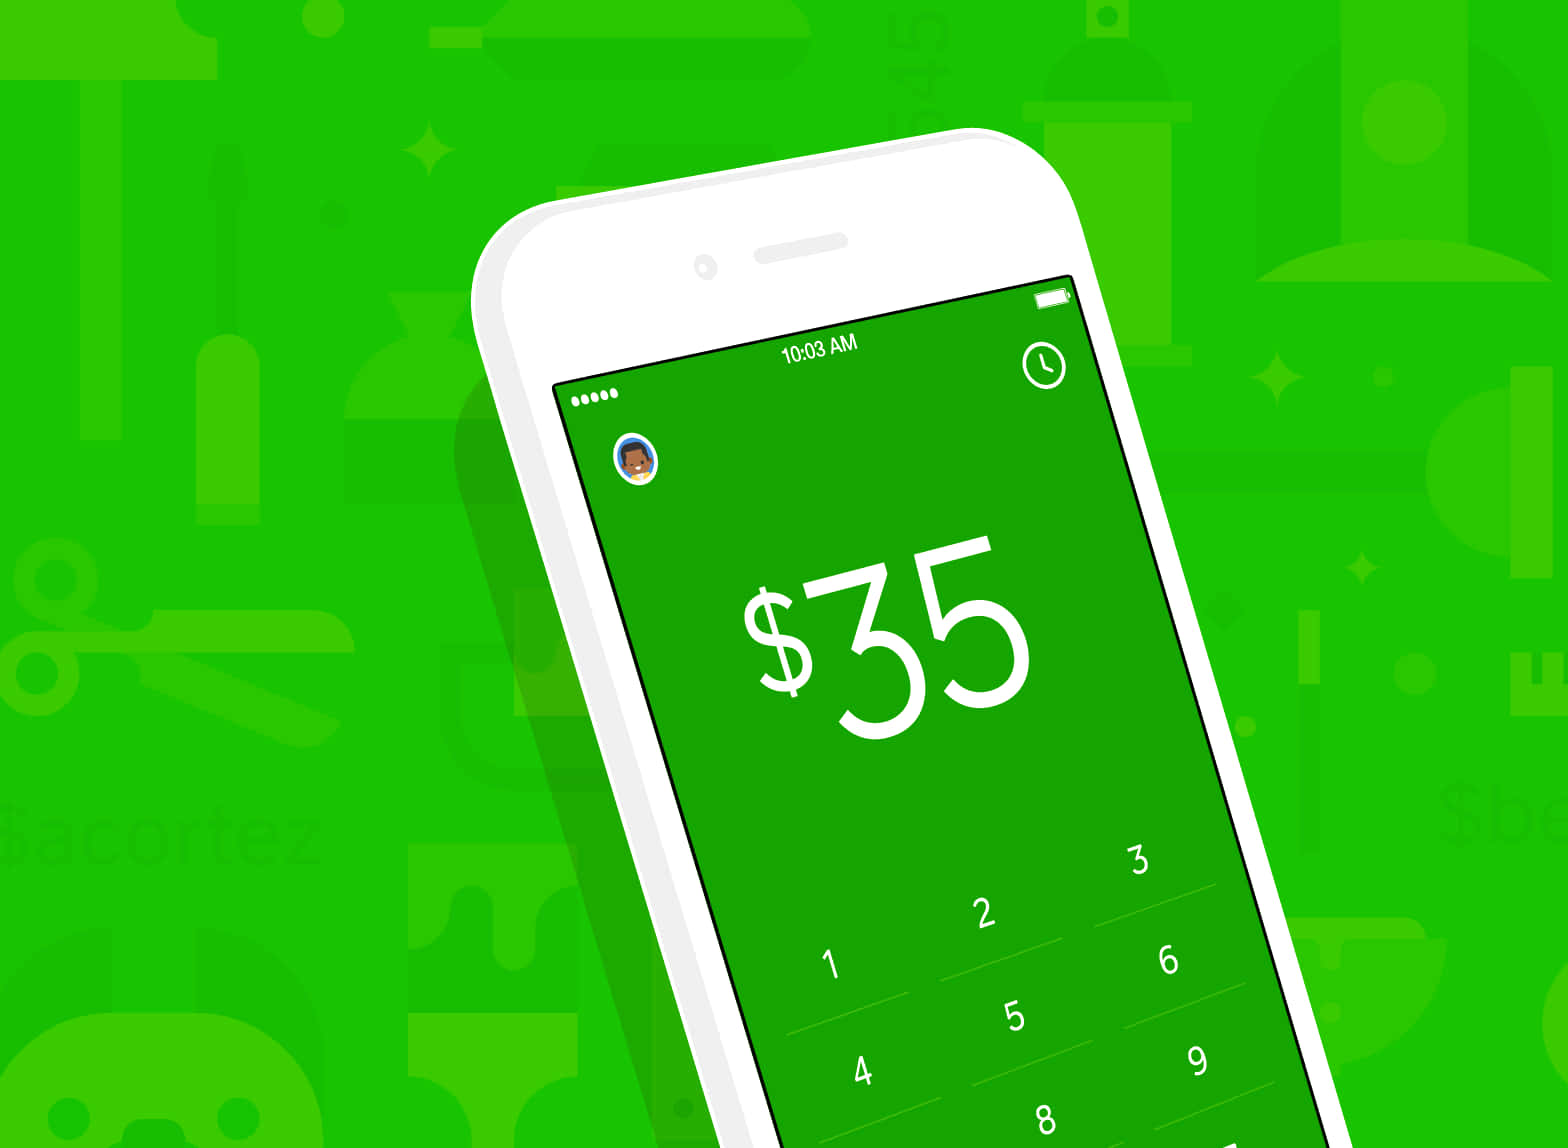 Engrön Telefon Med En Grön Skärm Som Visar En Räkning På $55.